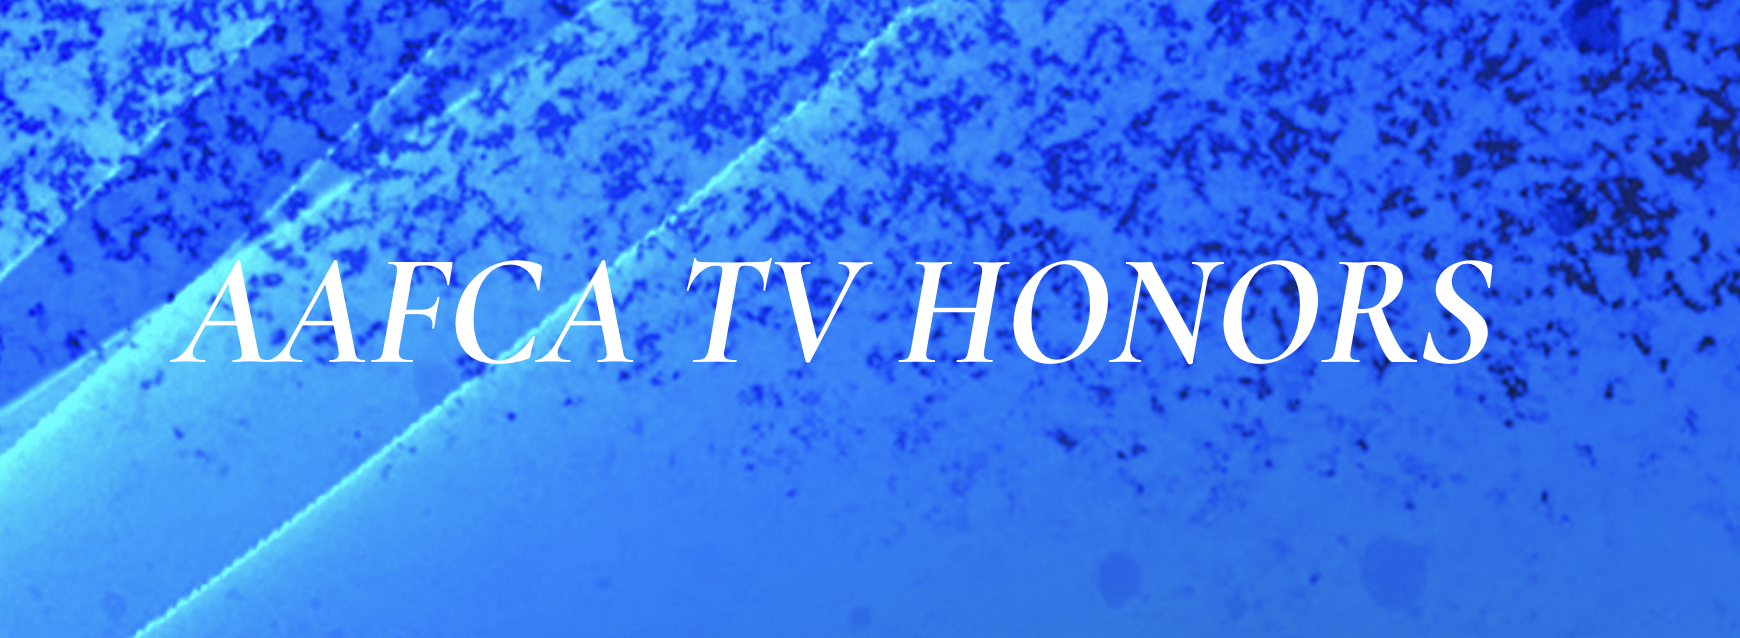 AAFCA Announces Timeline for 2023 AAFCA TV Honors Awardsdaily